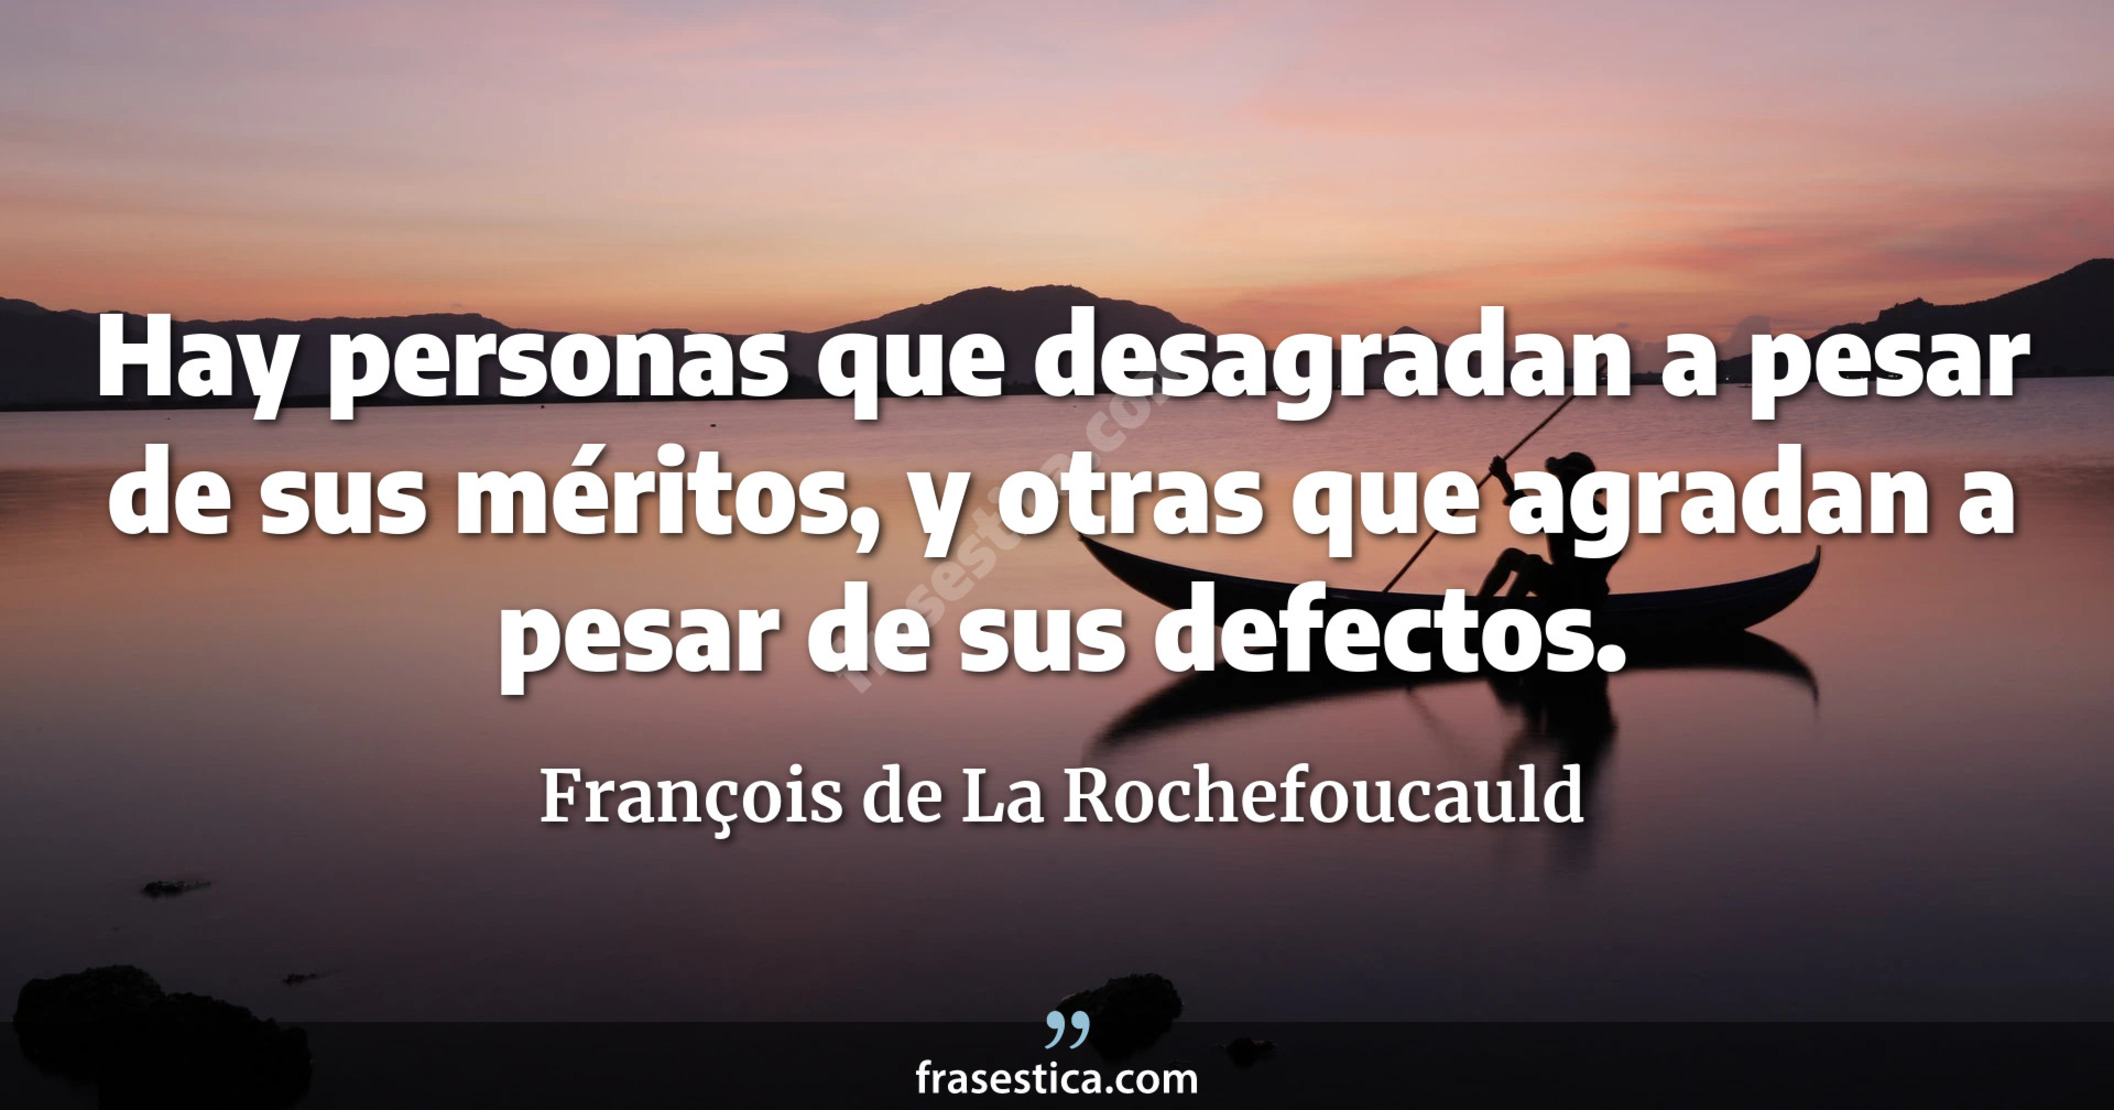 Hay personas que desagradan a pesar de sus méritos, y otras que agradan a pesar de sus defectos. - François de La Rochefoucauld